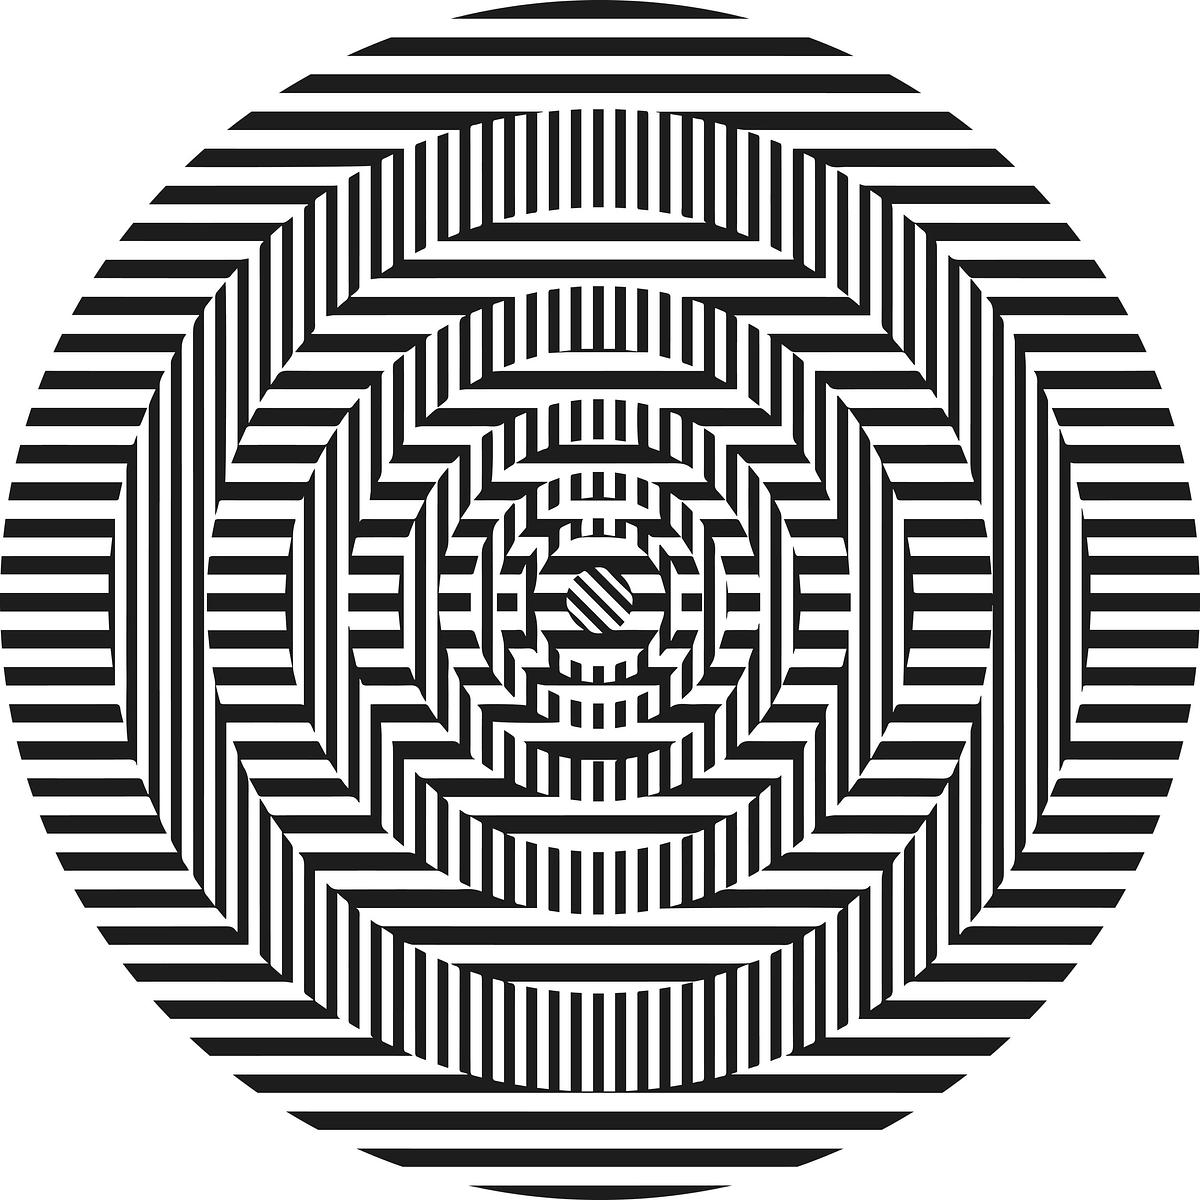 Титульное изображение для страницы события: сходящиеся к центру круги из черных горизонтальных и вертикальных линий на белом фоне